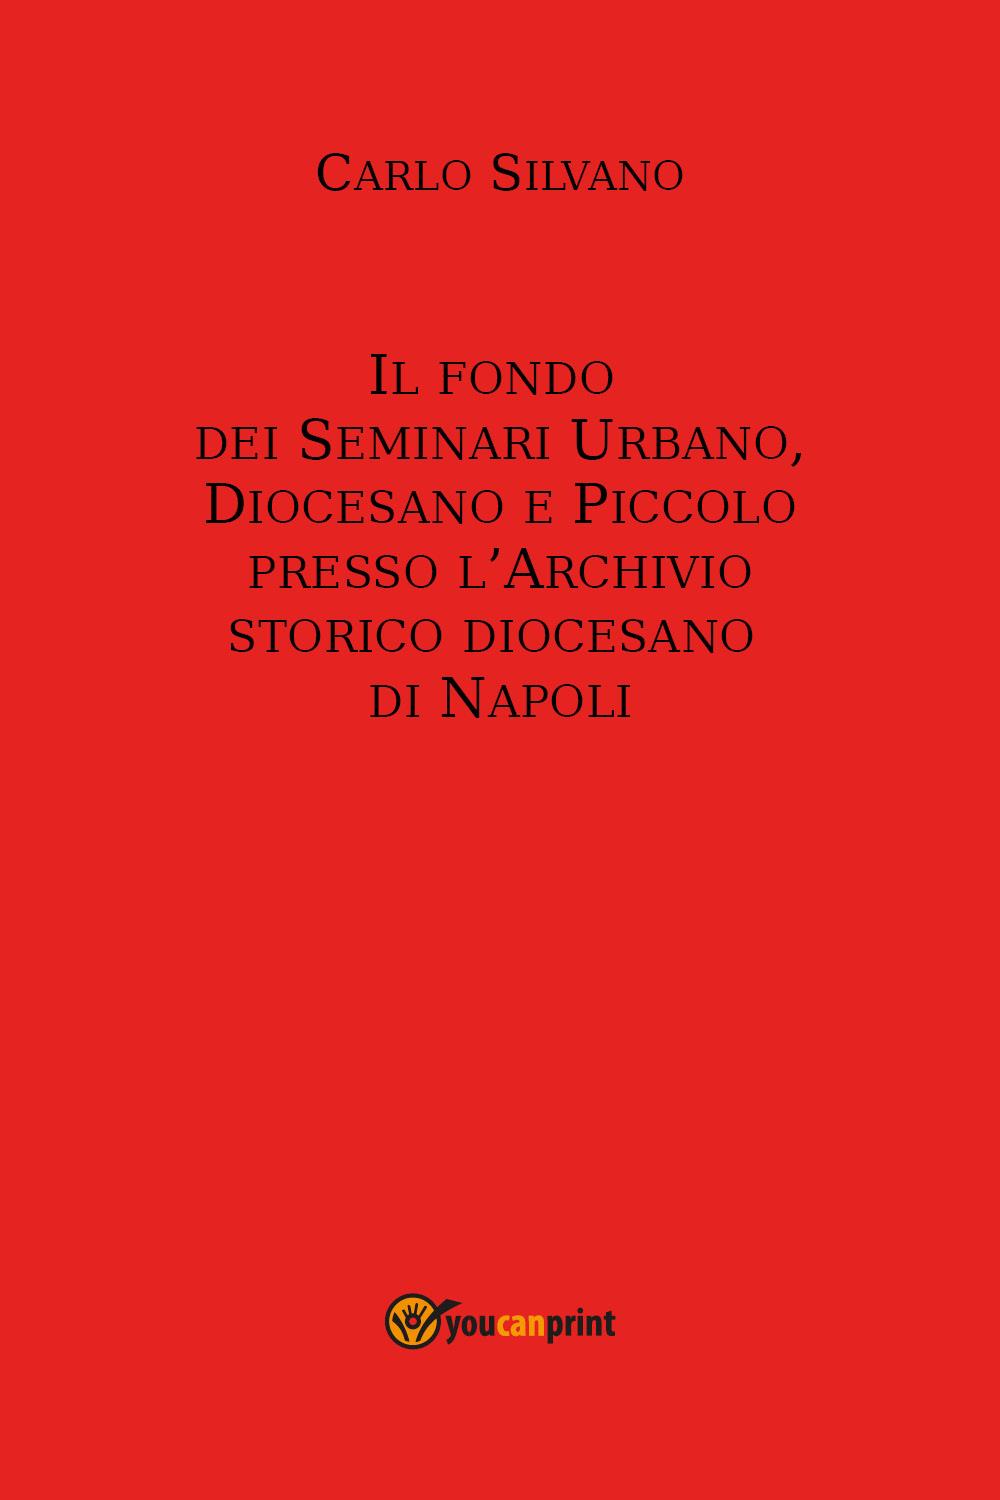 Il fondo  dei Seminari Urbano, Diocesano e Piccolo presso l’Archivio storico diocesano  di Napoli